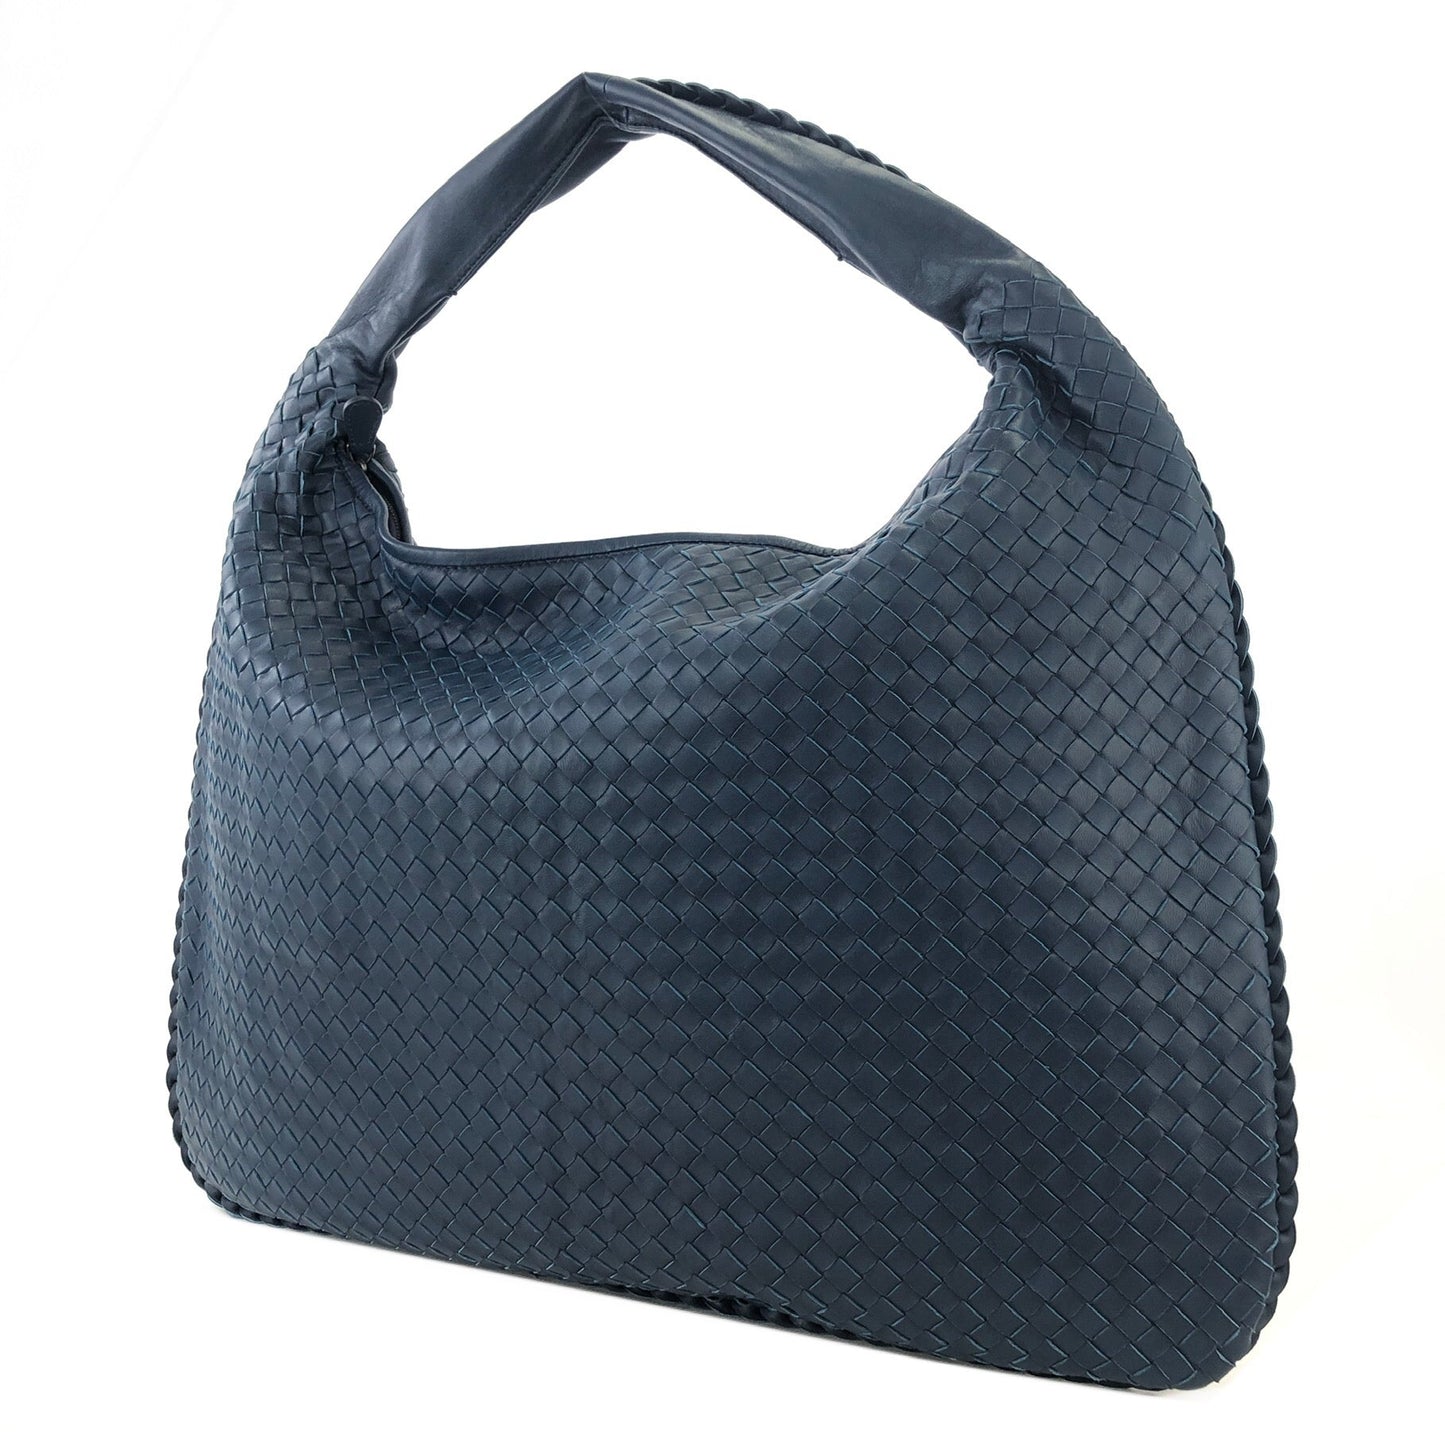 Bottega Veneta Intrecciato Leather Hobo bag Blue VIntage awvey7